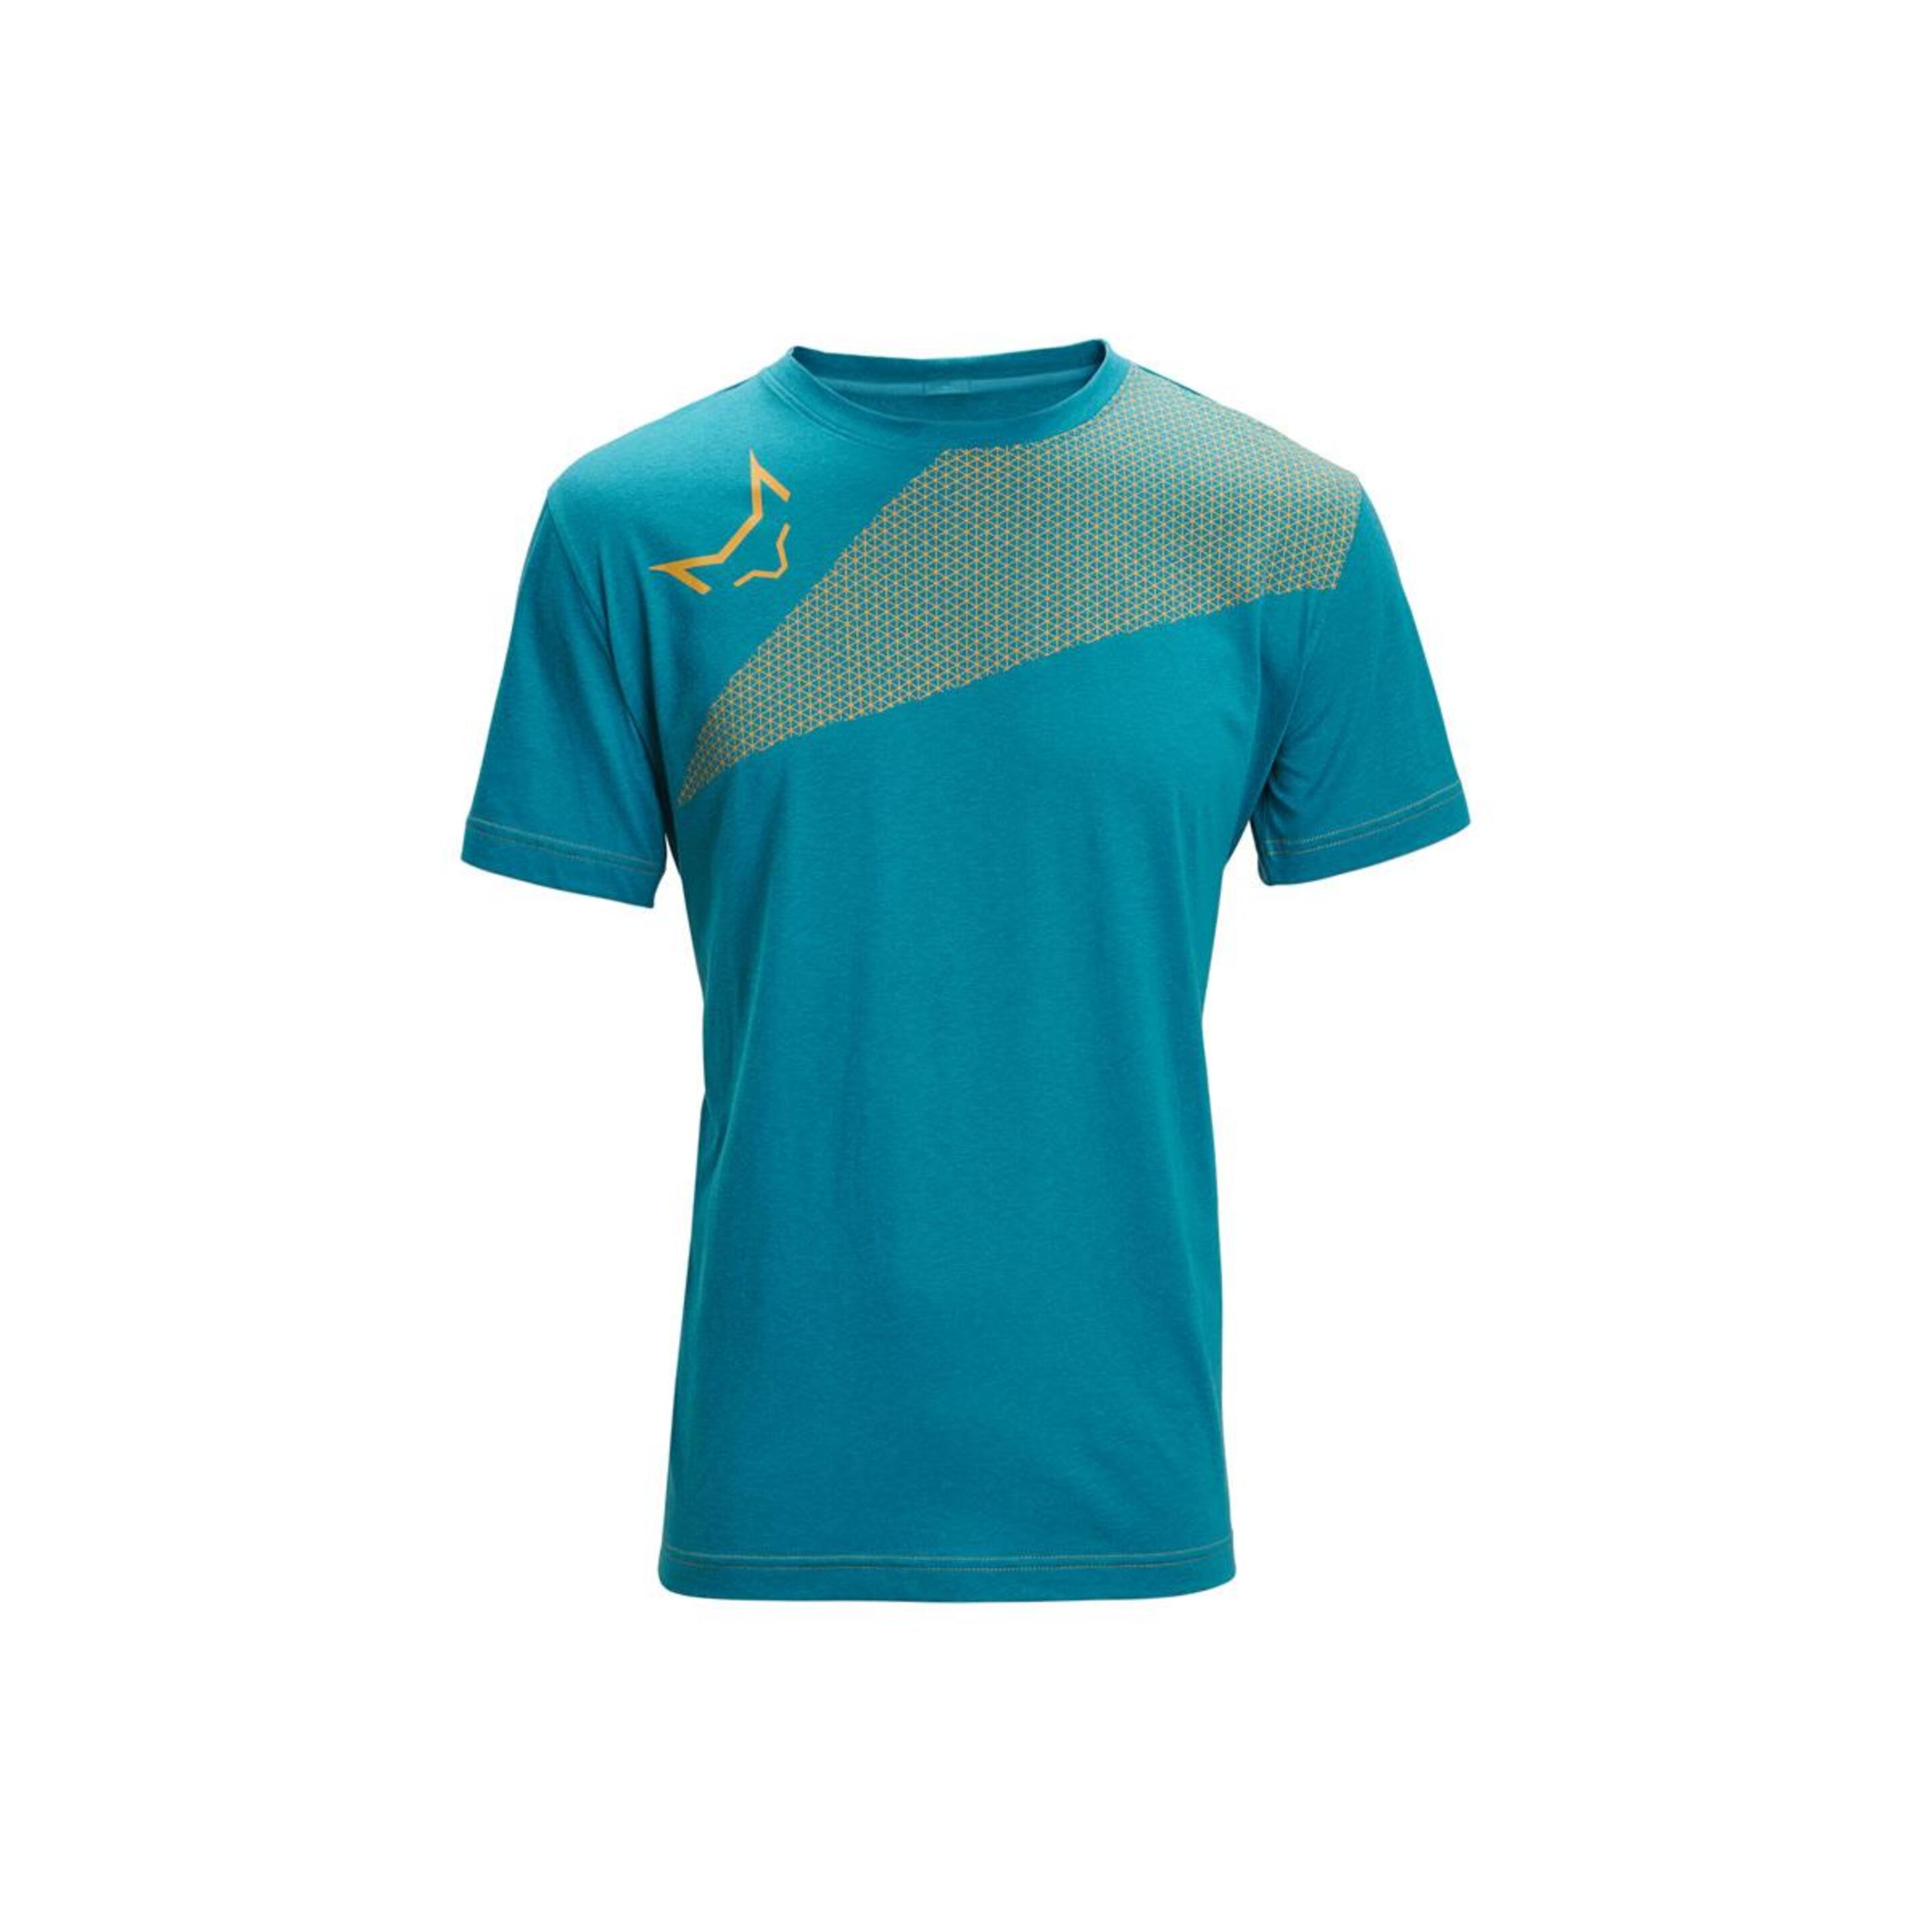 Camiseta Altus Alhama - Azul  MKP